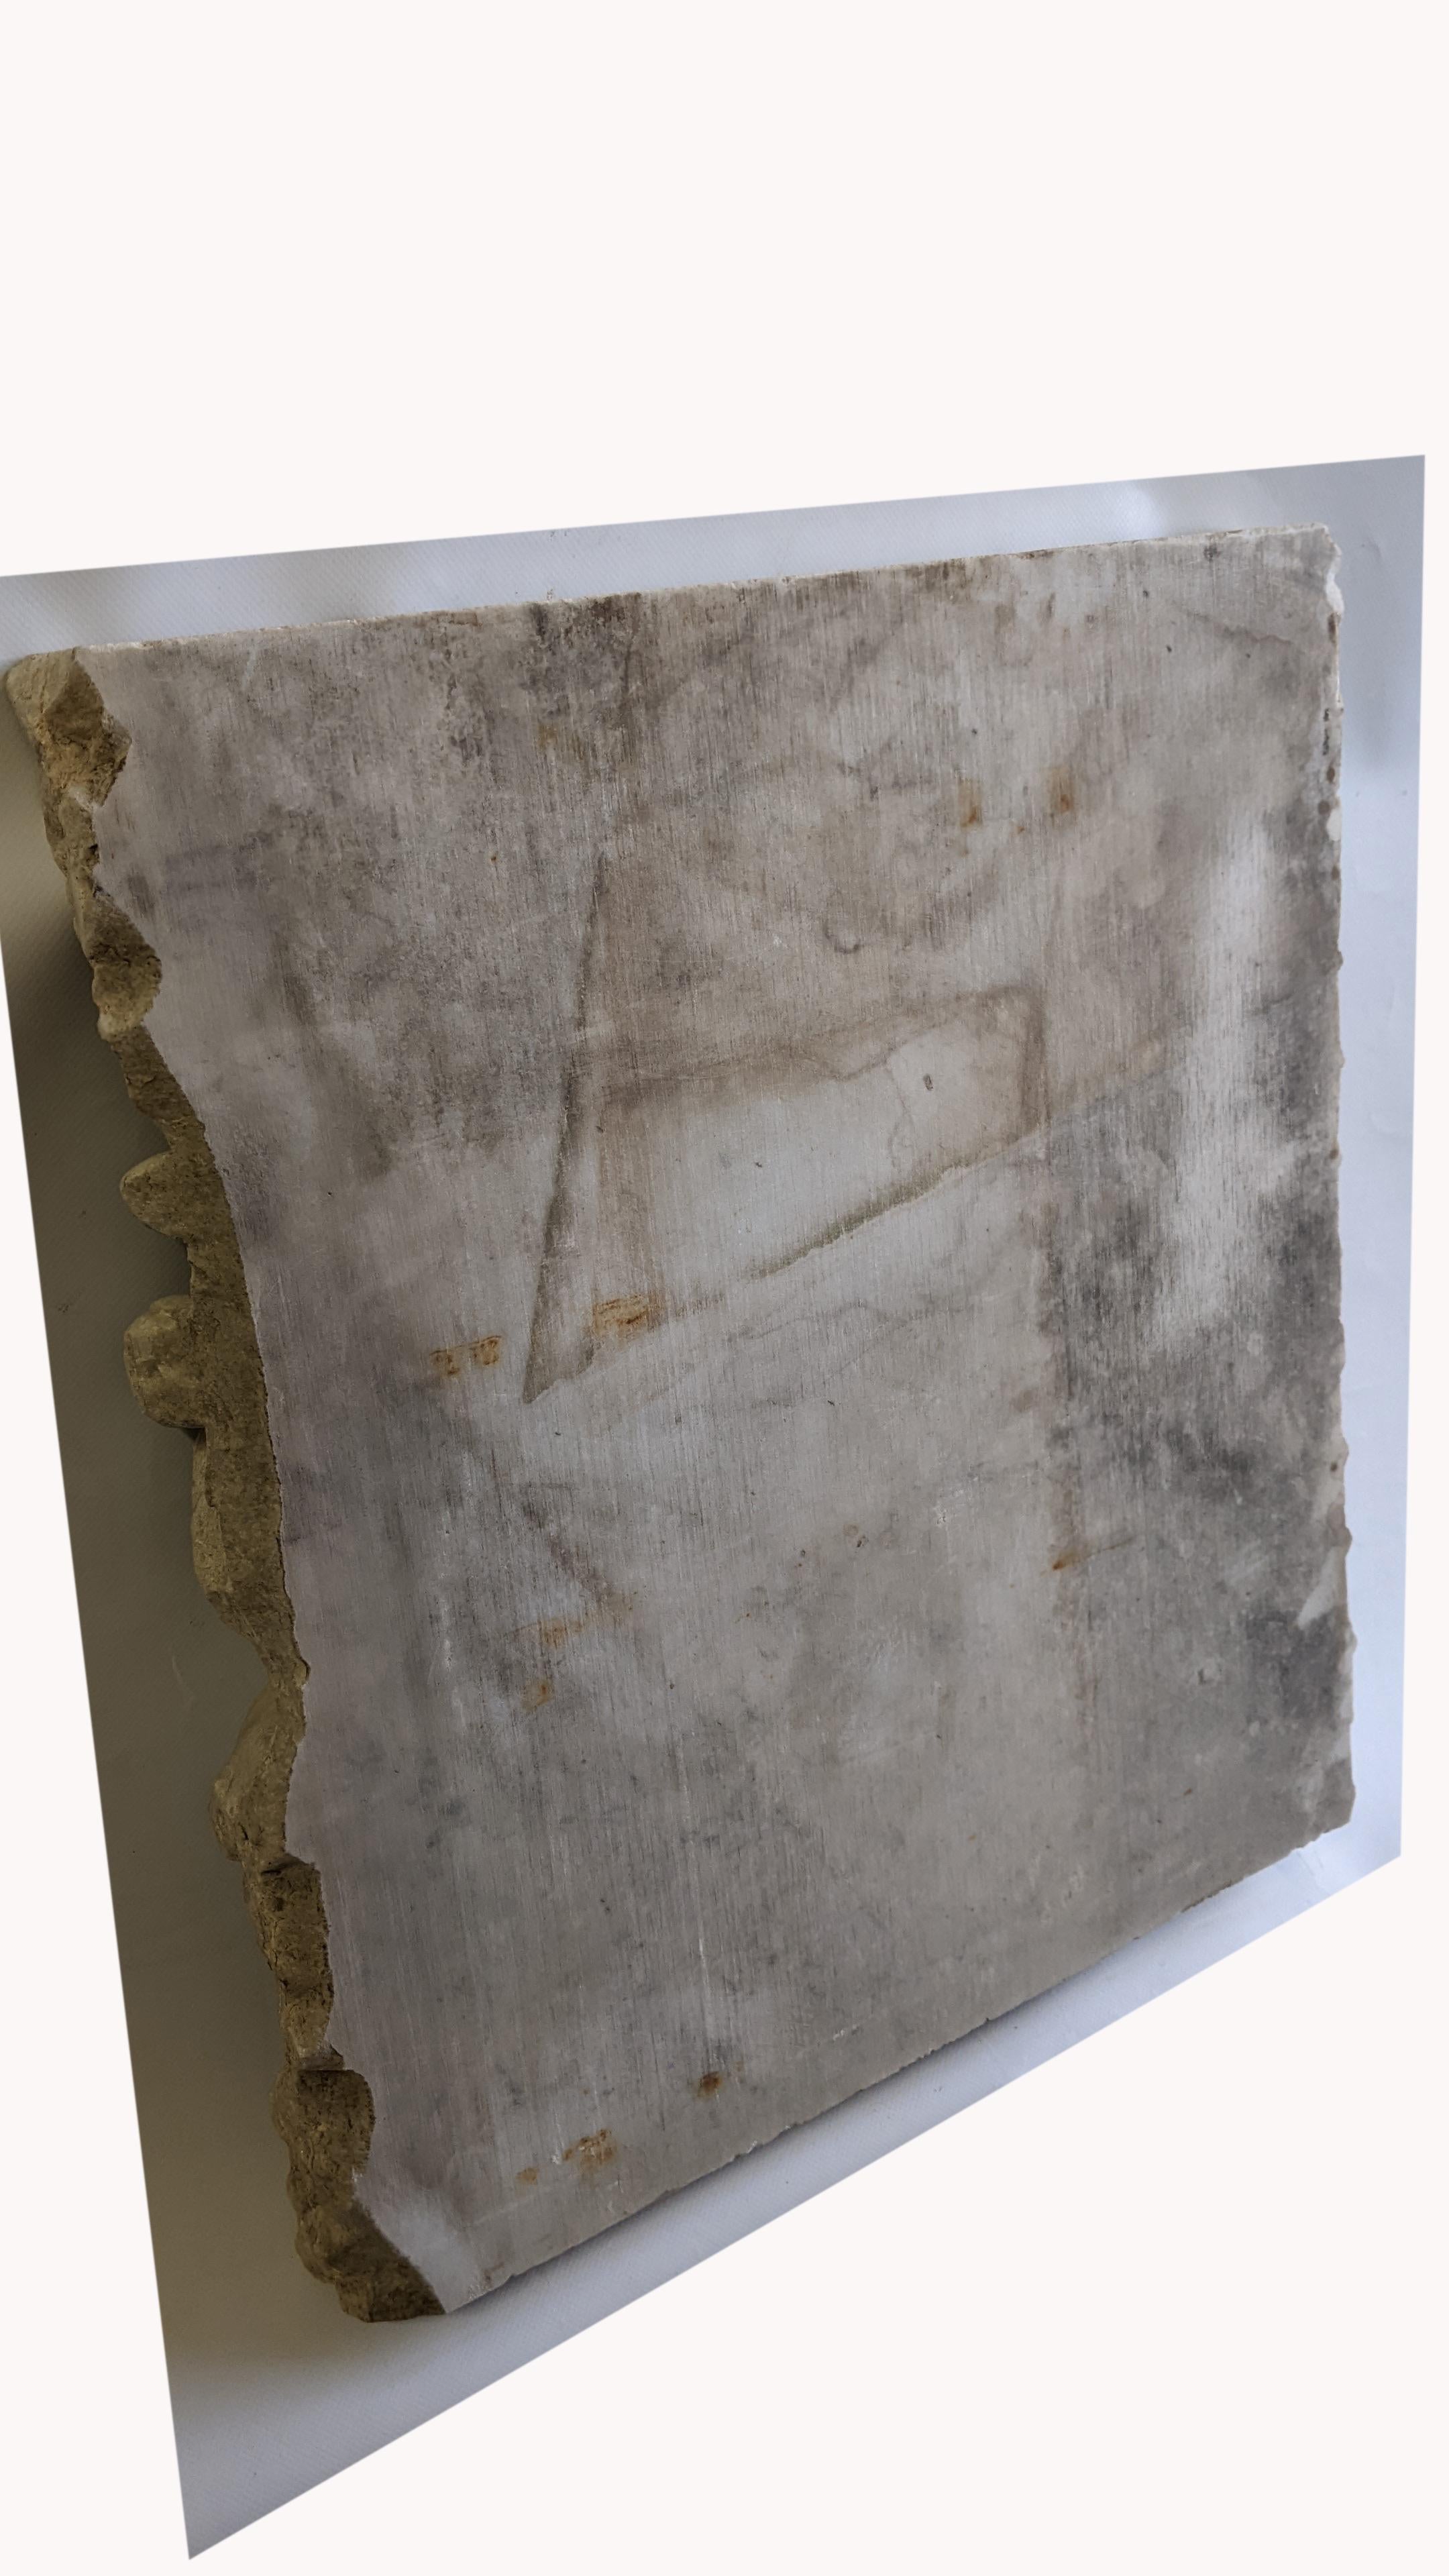 Altorilievo (frammento), di battaglia romana su marmo bianco di Carrara For Sale 5